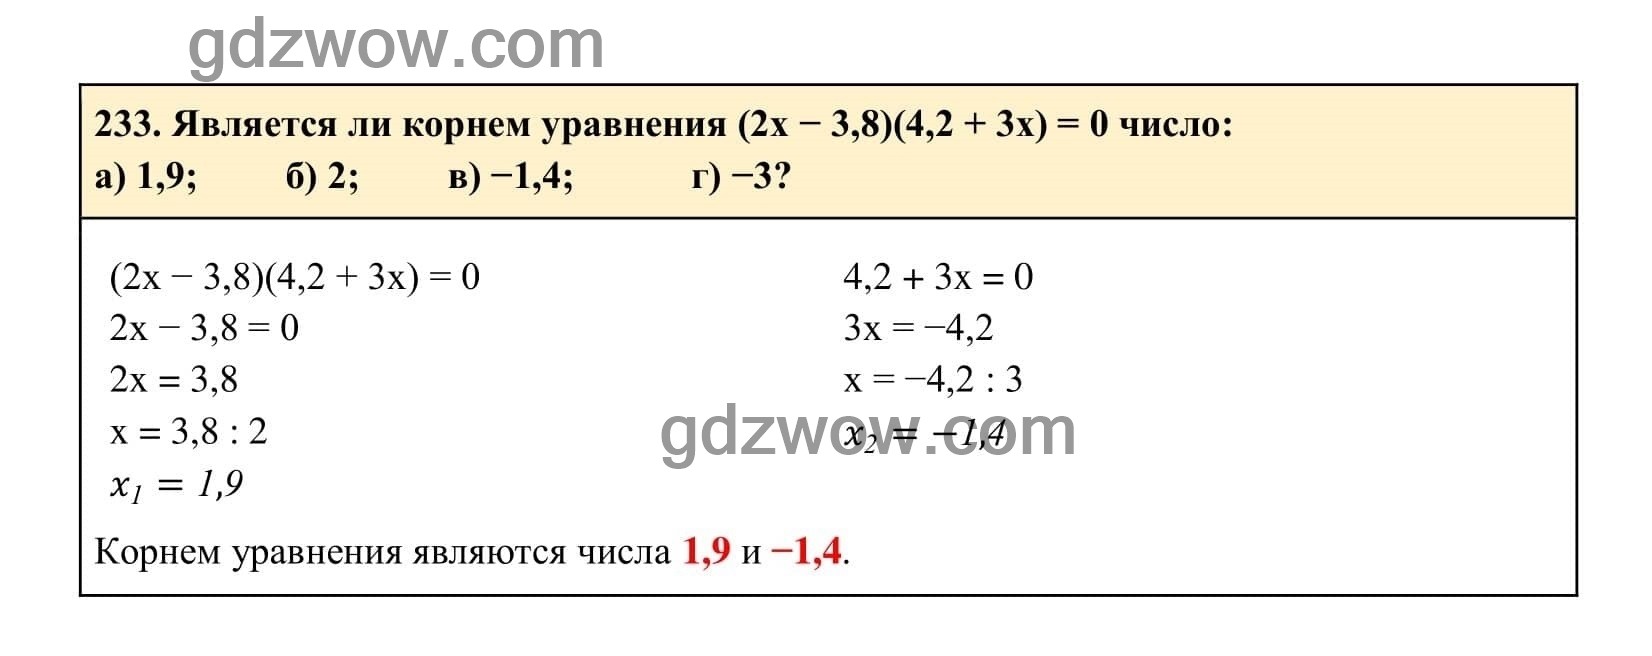 Упражнение 233 - ГДЗ по Алгебре 7 класс Учебник Макарычев (решебник) - GDZwow